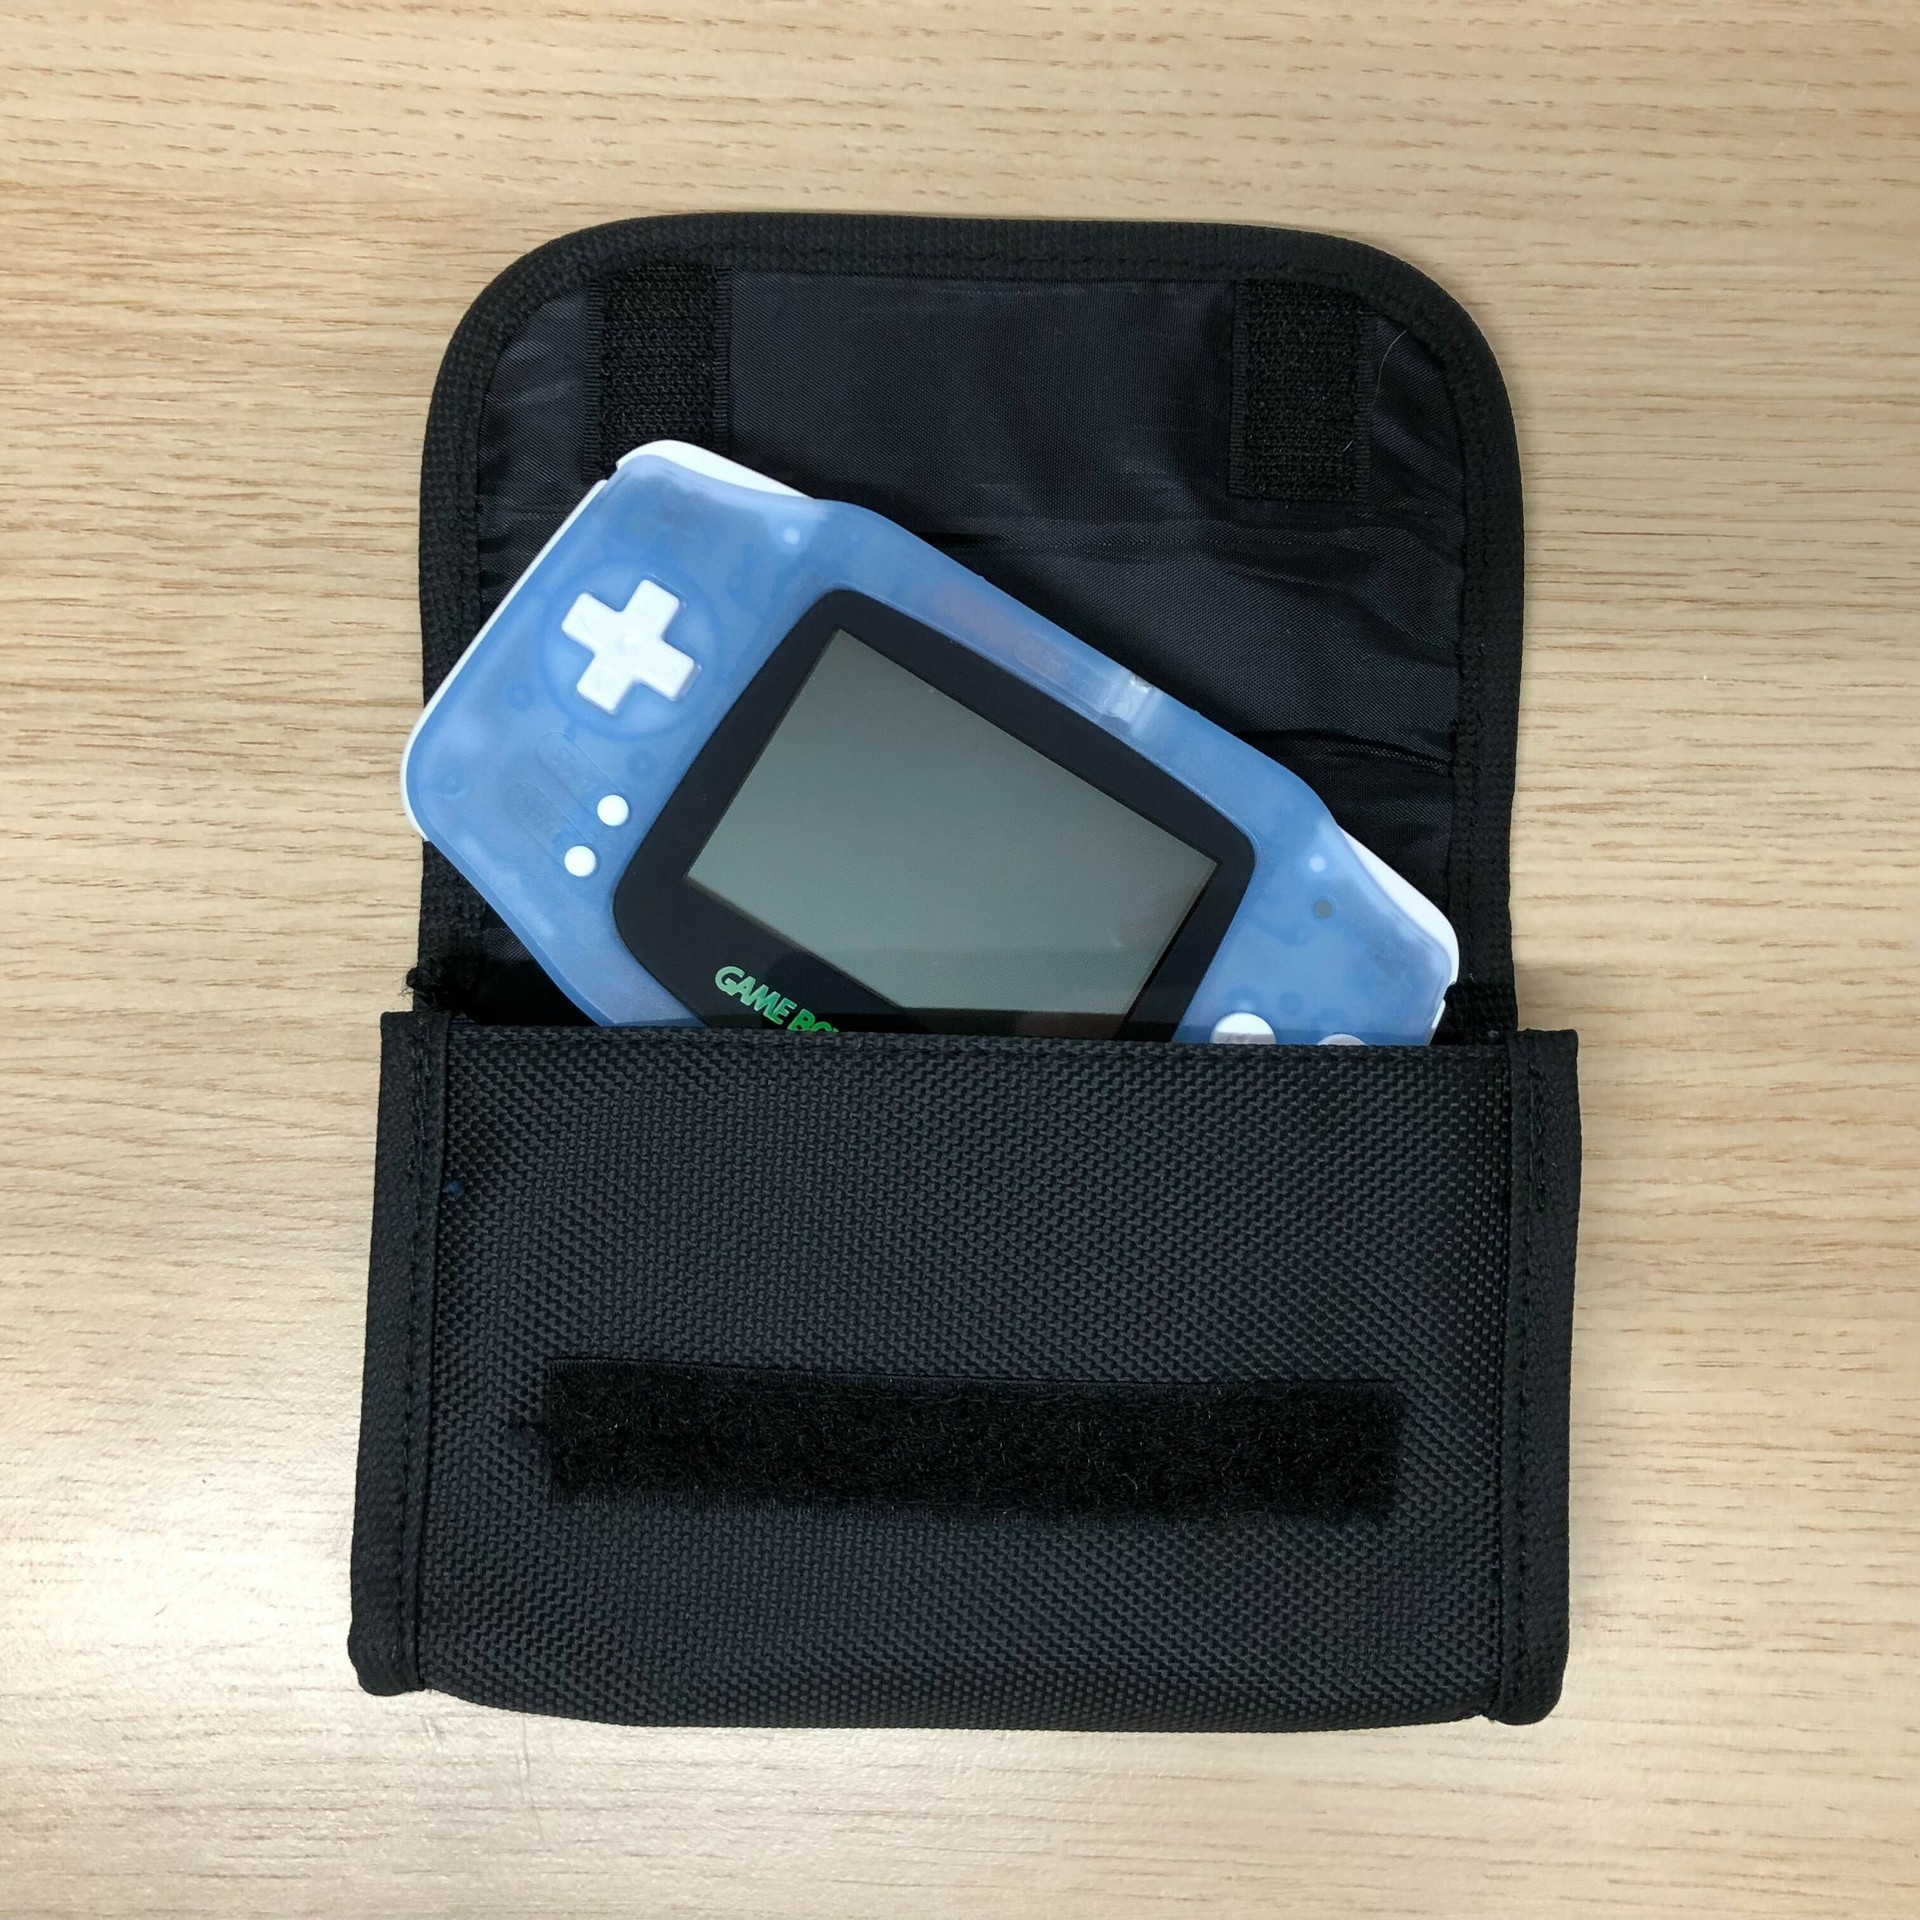 Original Gameboy Advance Carry Bag - Black/Blue - Gameboy Advance Hardware - 2